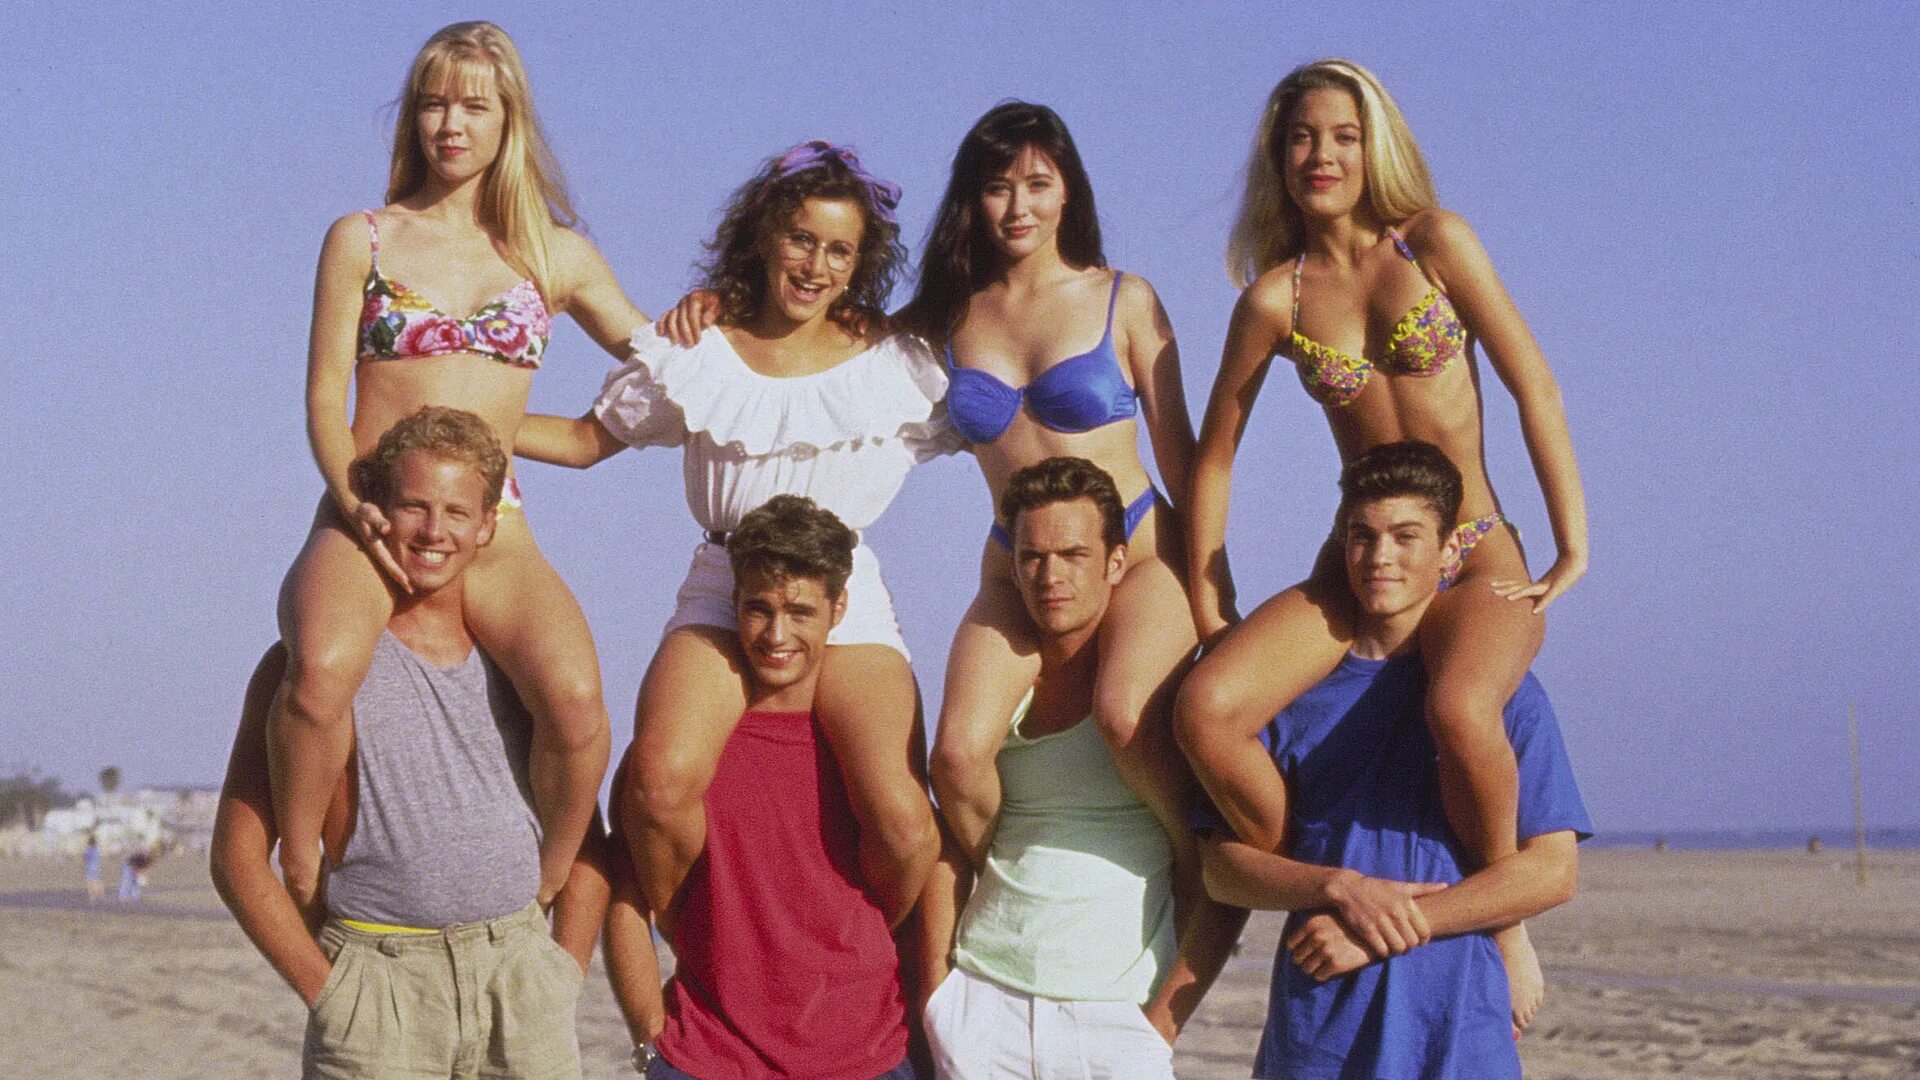 Беверли-Хиллз 90210 бренда и Келли. Большие девочки шестой выпуск